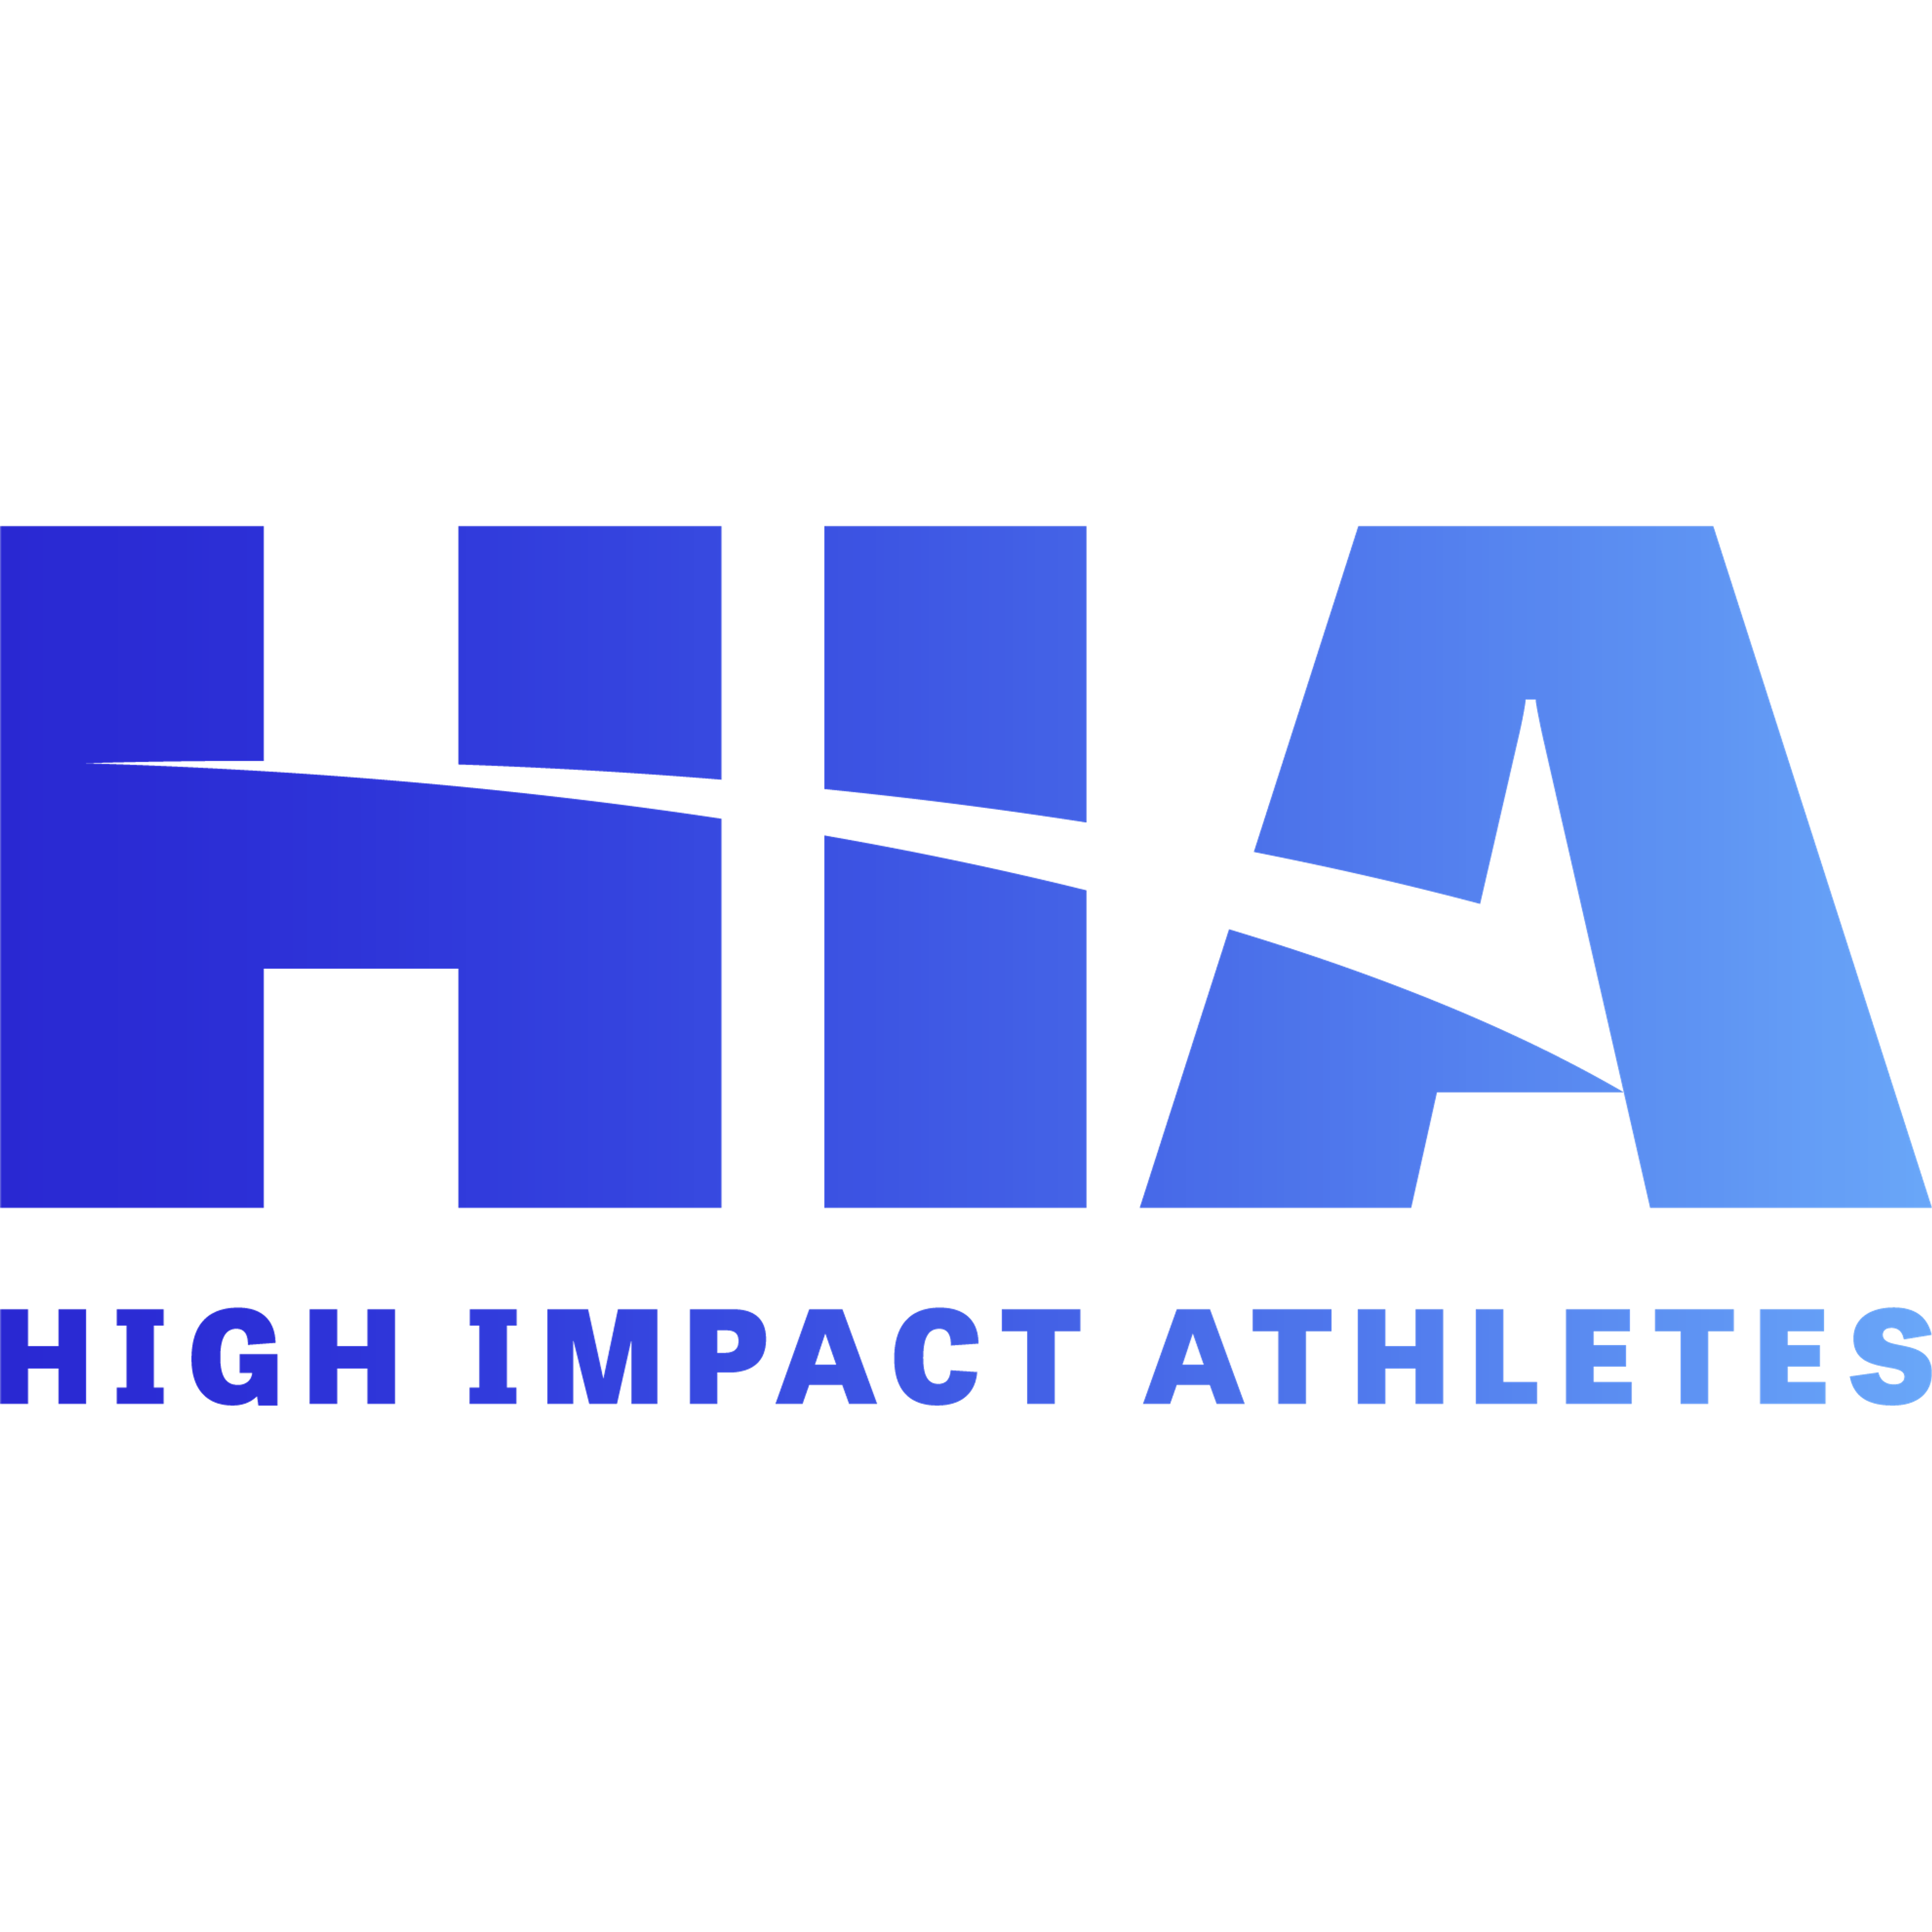 High Impact Athletes’ Environmental Portfolio 